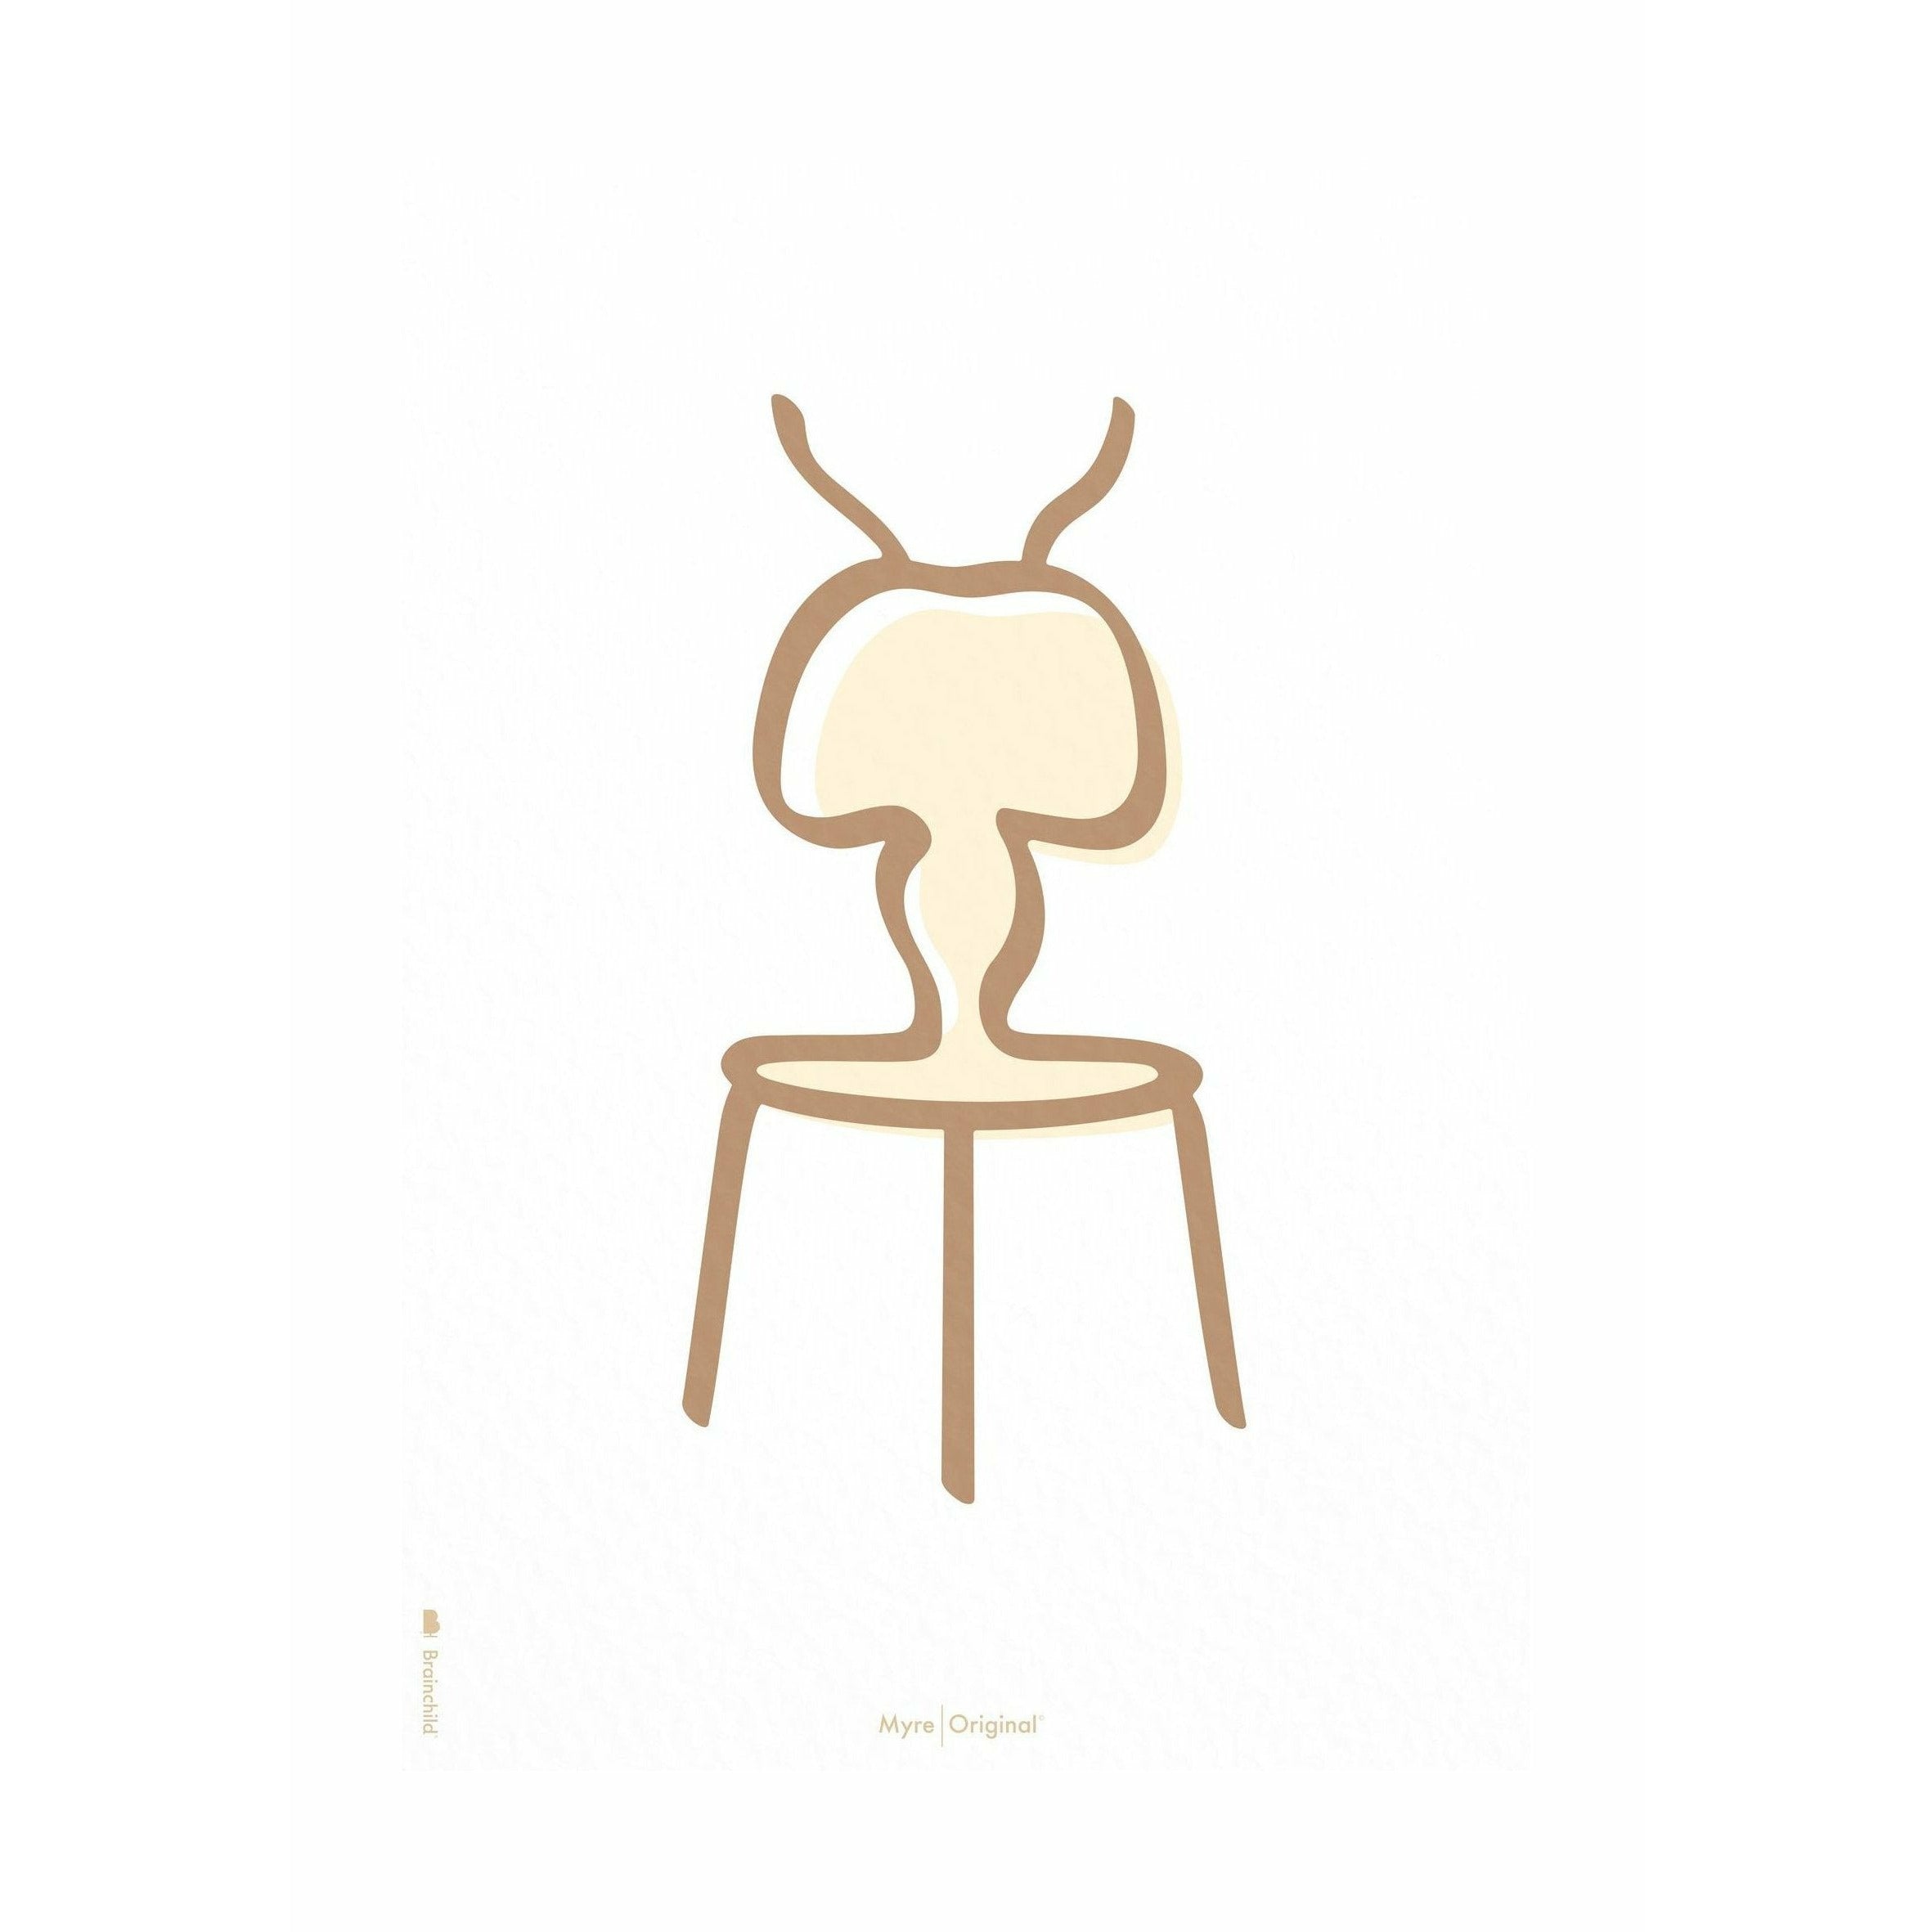 Plakát Ant Line Brainchild bez rámu 70 x100 cm, bílé pozadí